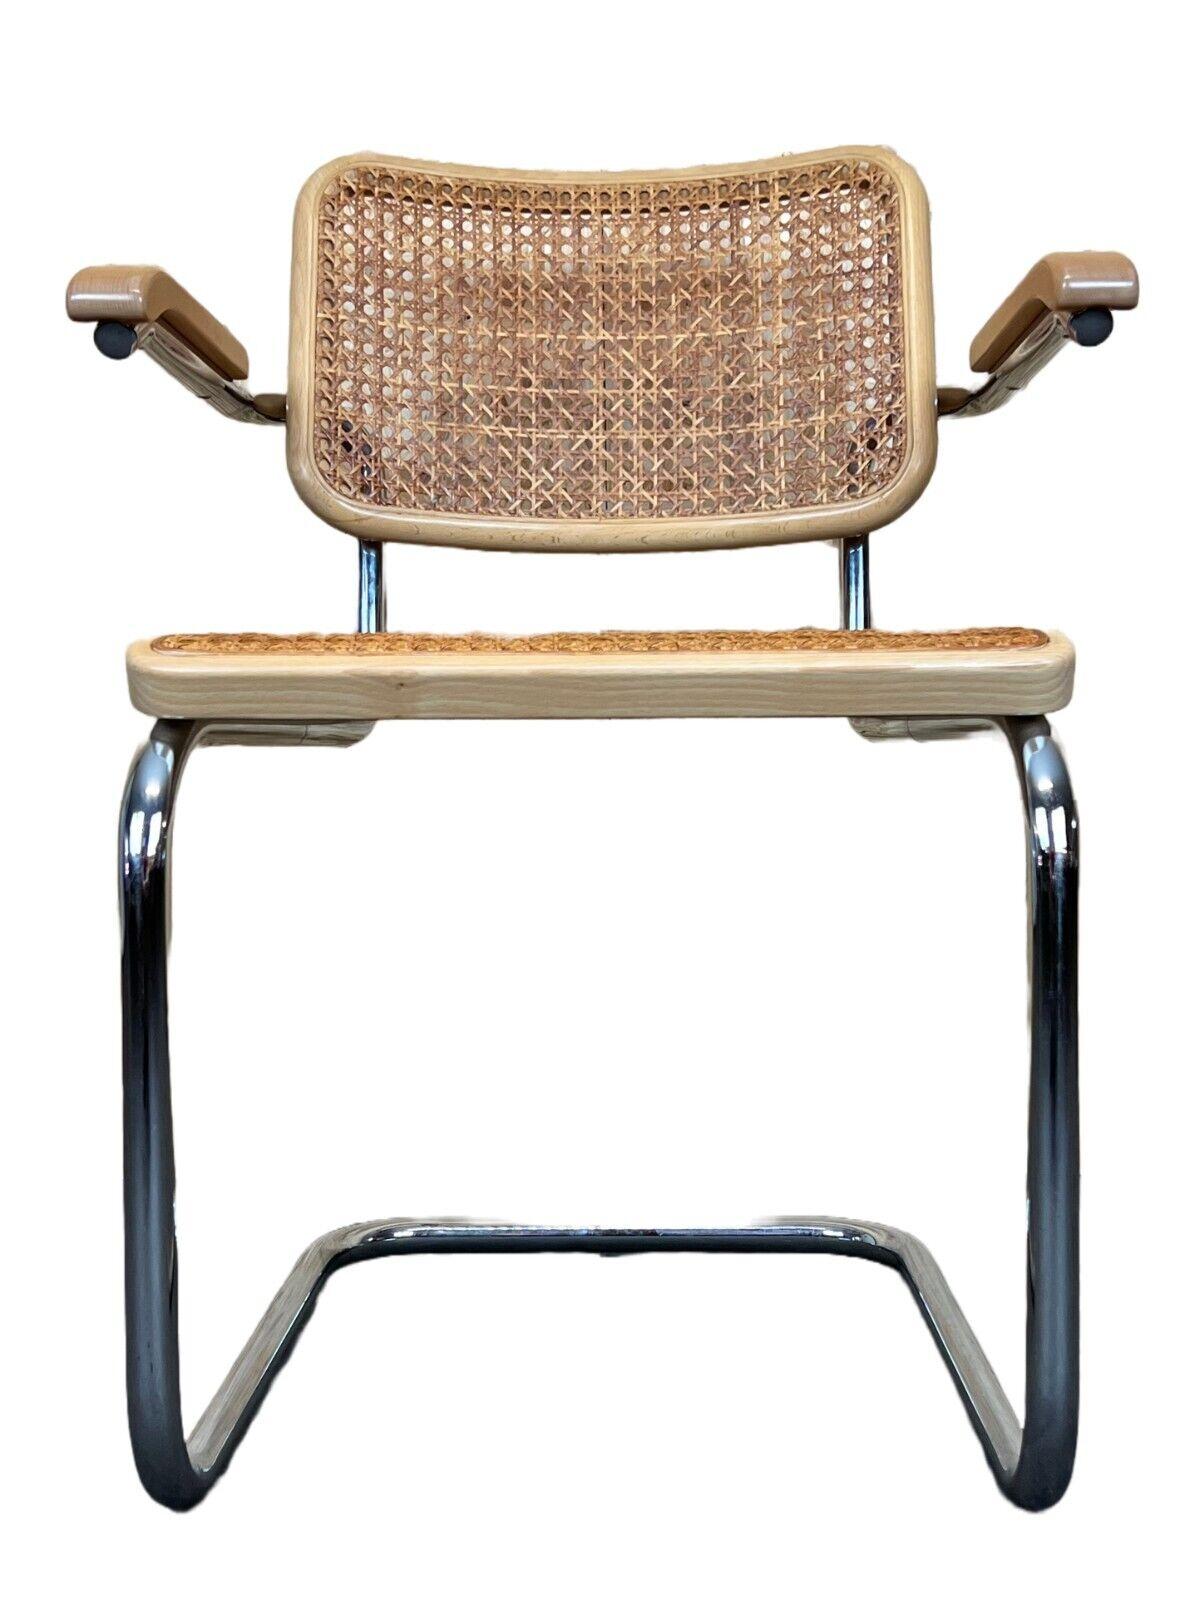 chaise 80s Freischwiner Thonet 96 chrome accoudoir chaise maille design

Objet : fauteuil

Fabricant : Thonet

Condition : bon - vintage

Âge : environ 1980

Dimensions :

58cm x 60cm x 80cm
Hauteur du siège = 44cm

Autres notes